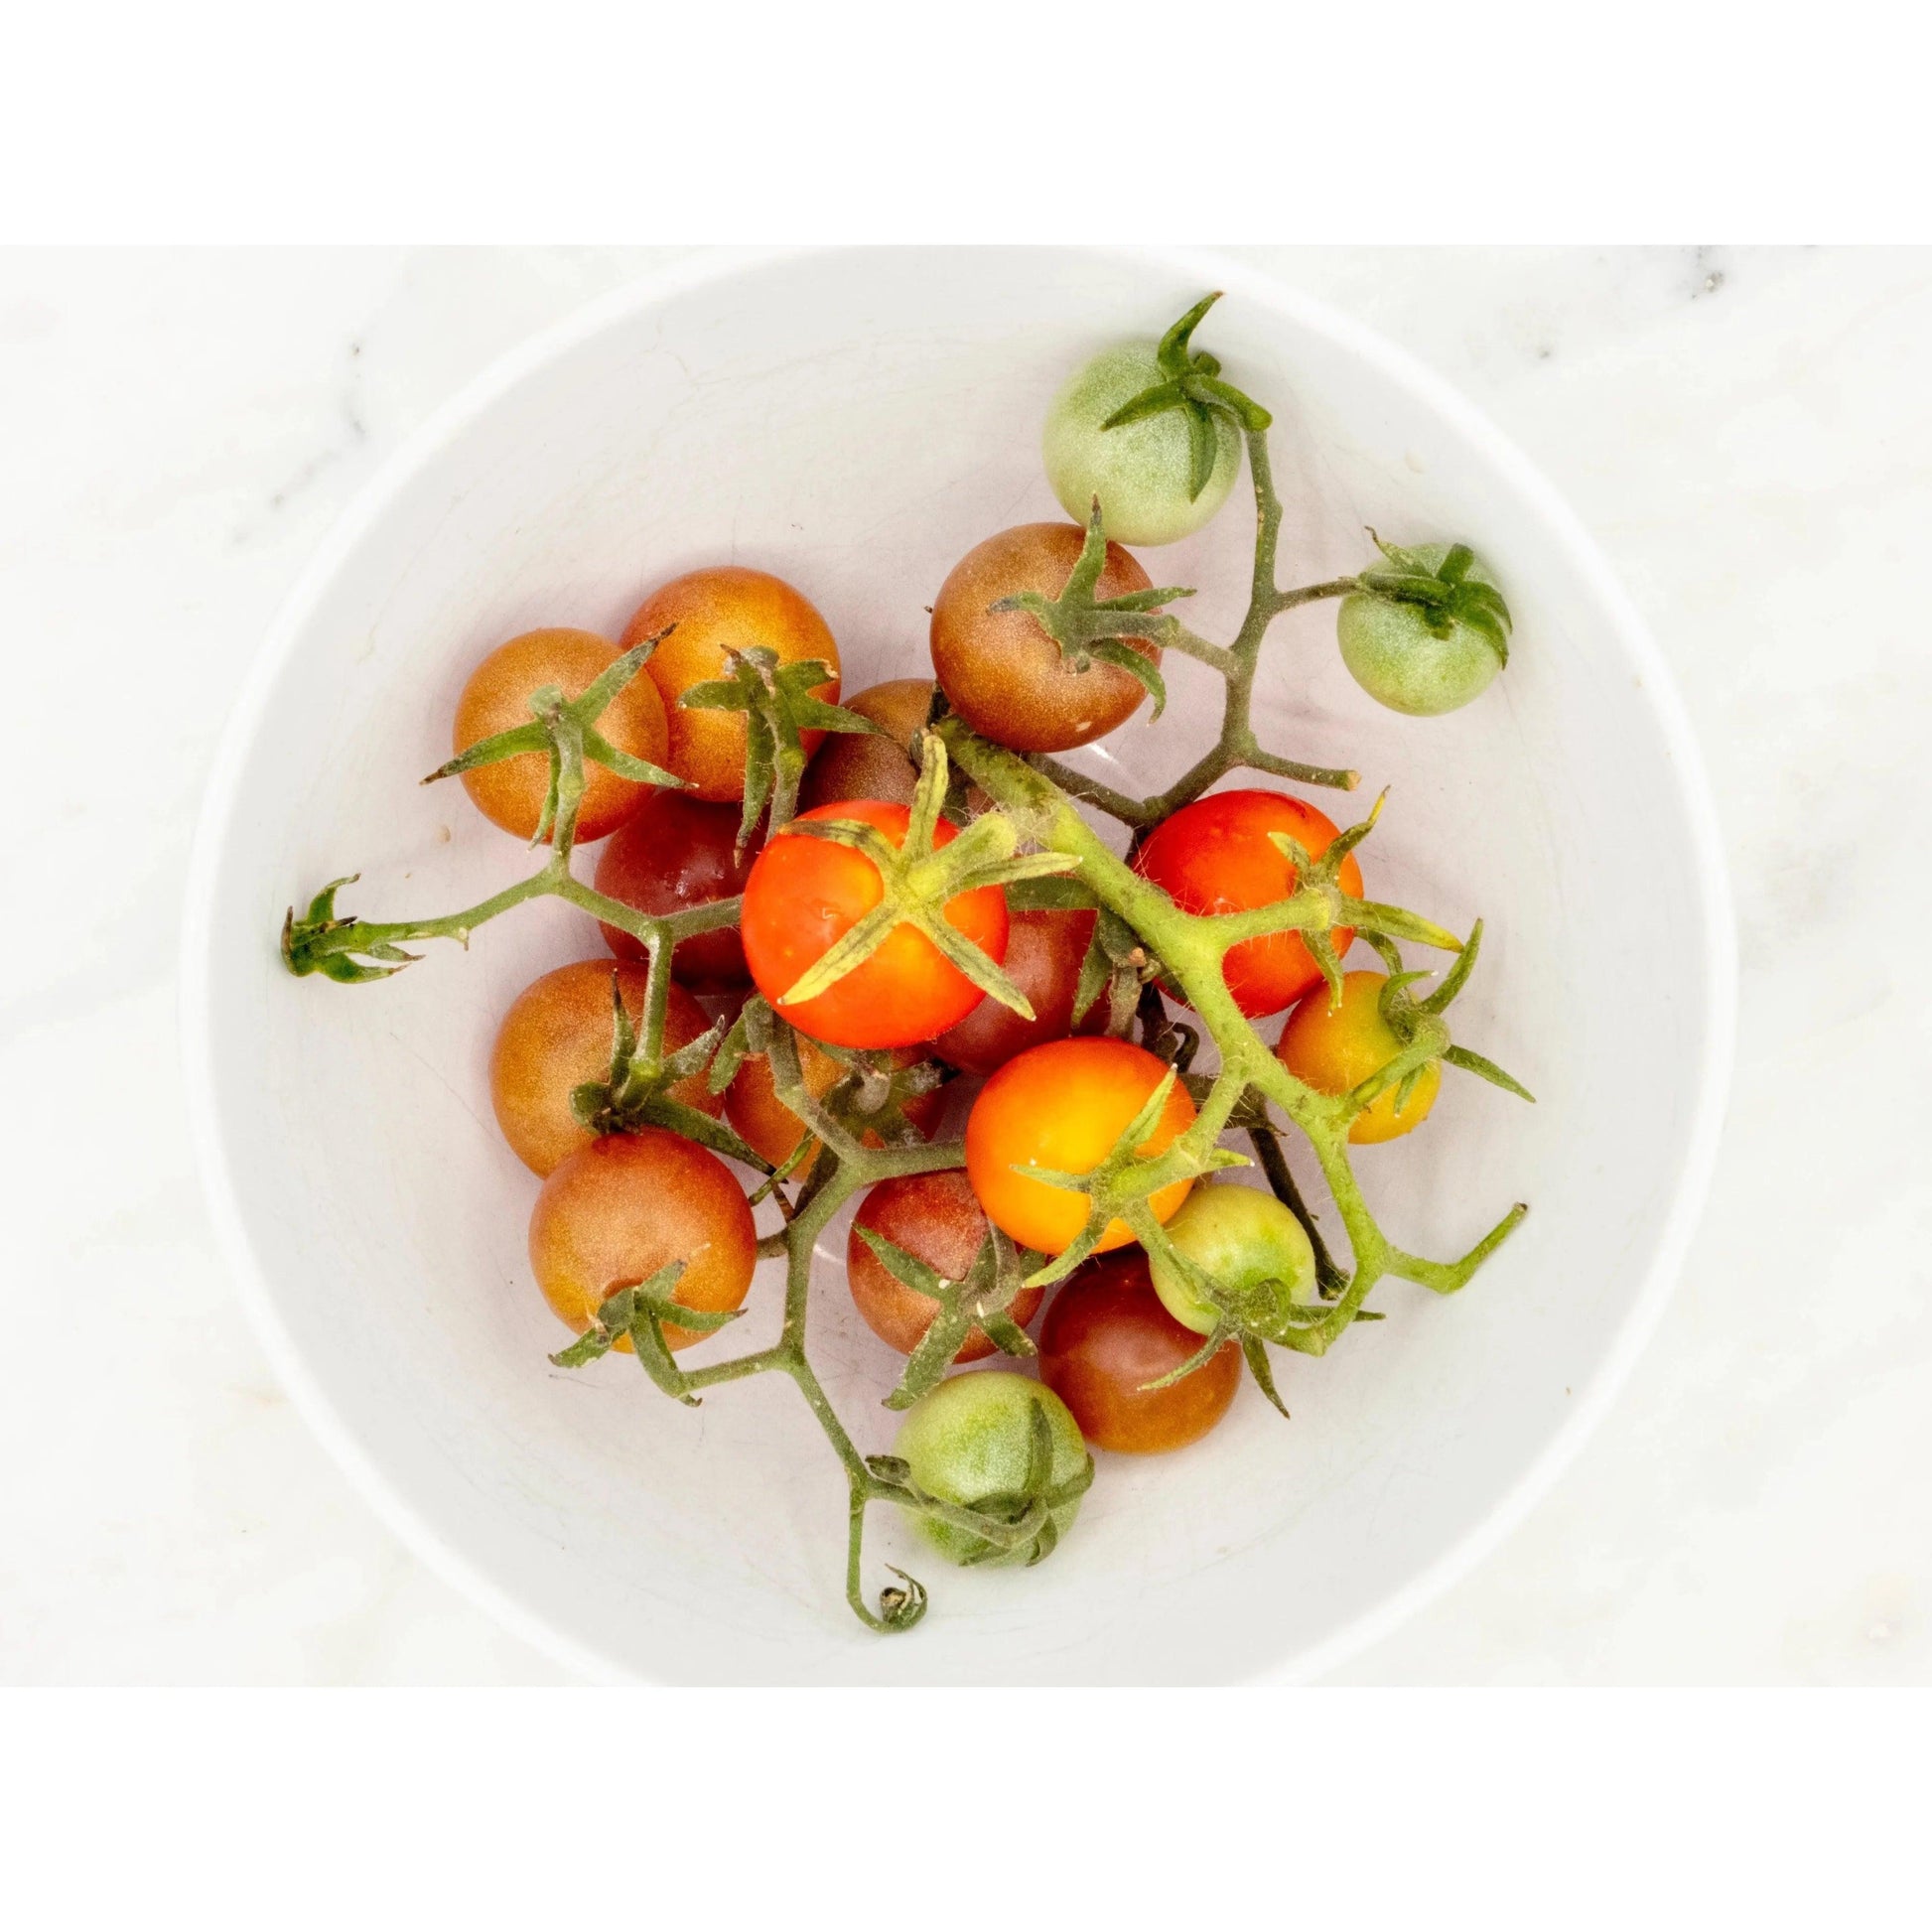 Soil-Grown Tomato Cherry - Nutrient Farm